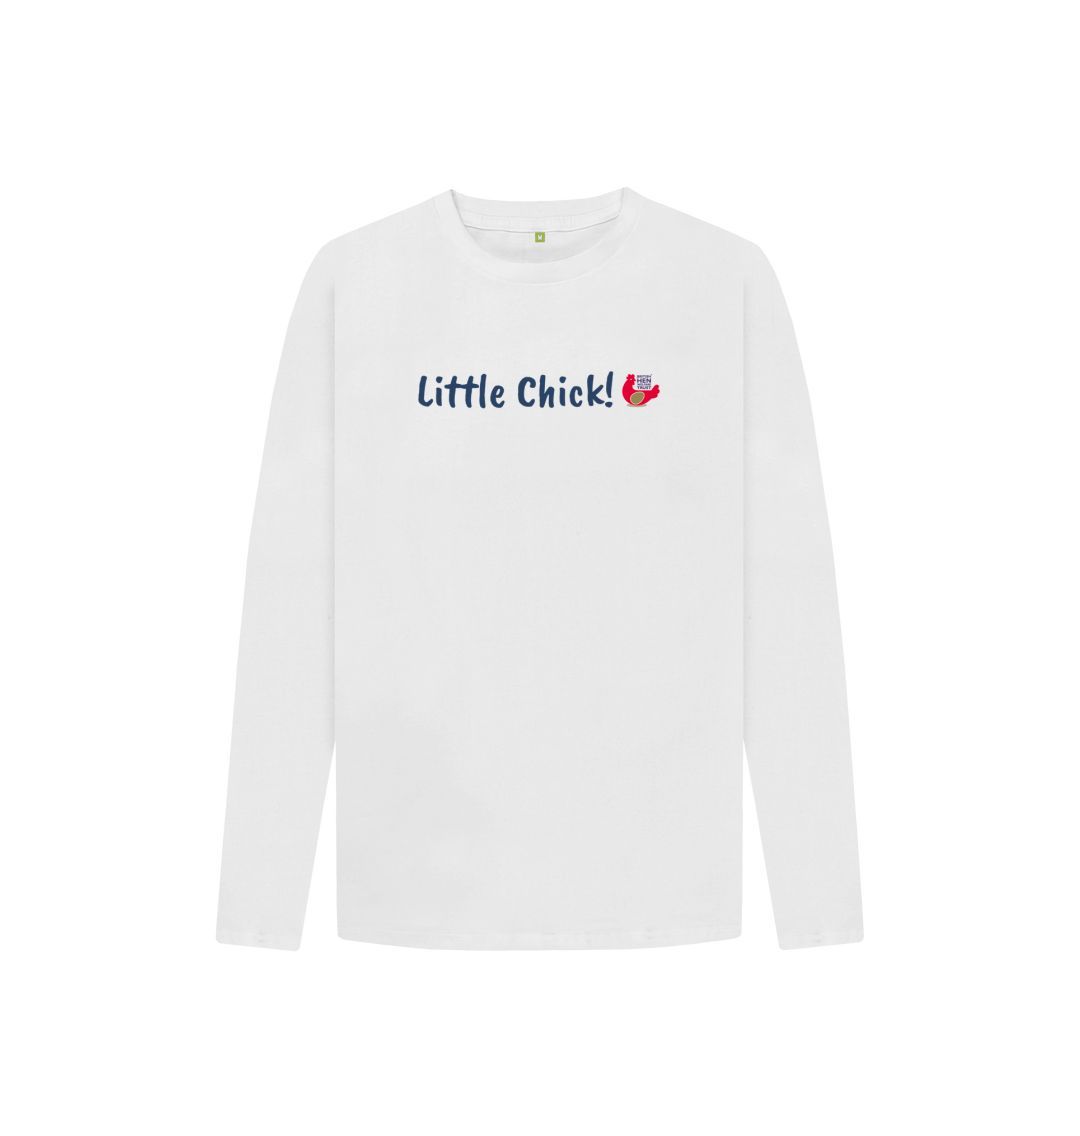 White Little Chick! Kids Unisex Long Sleeve T-Shirt